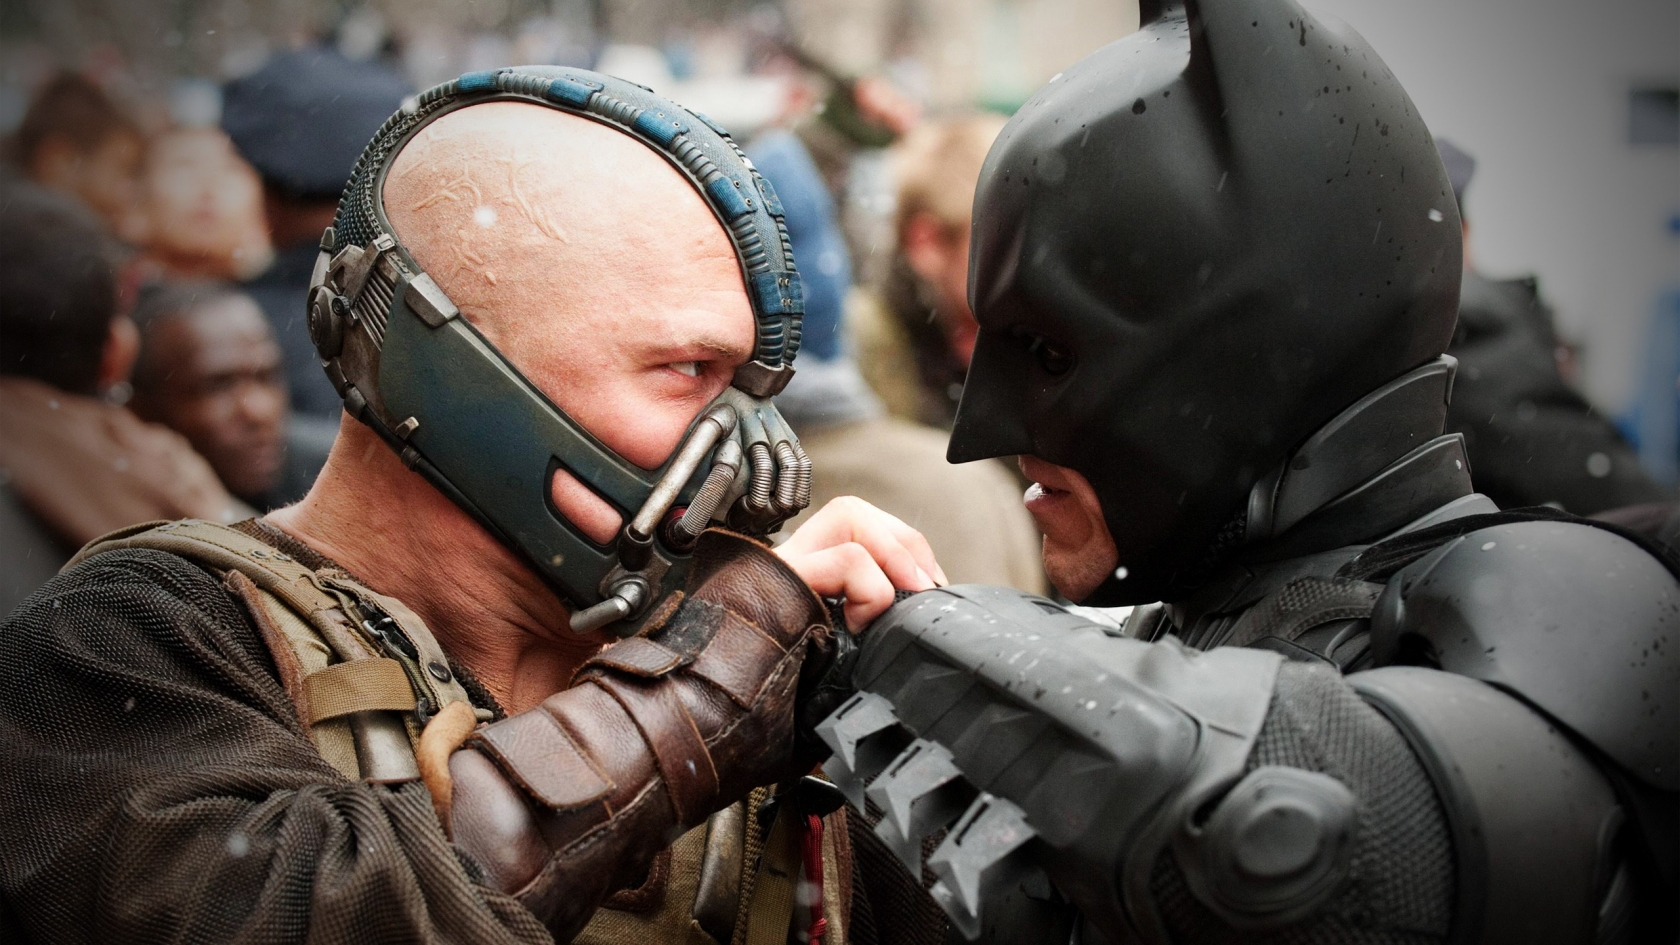 Bane vs Batman for 1680 x 945 HDTV resolution